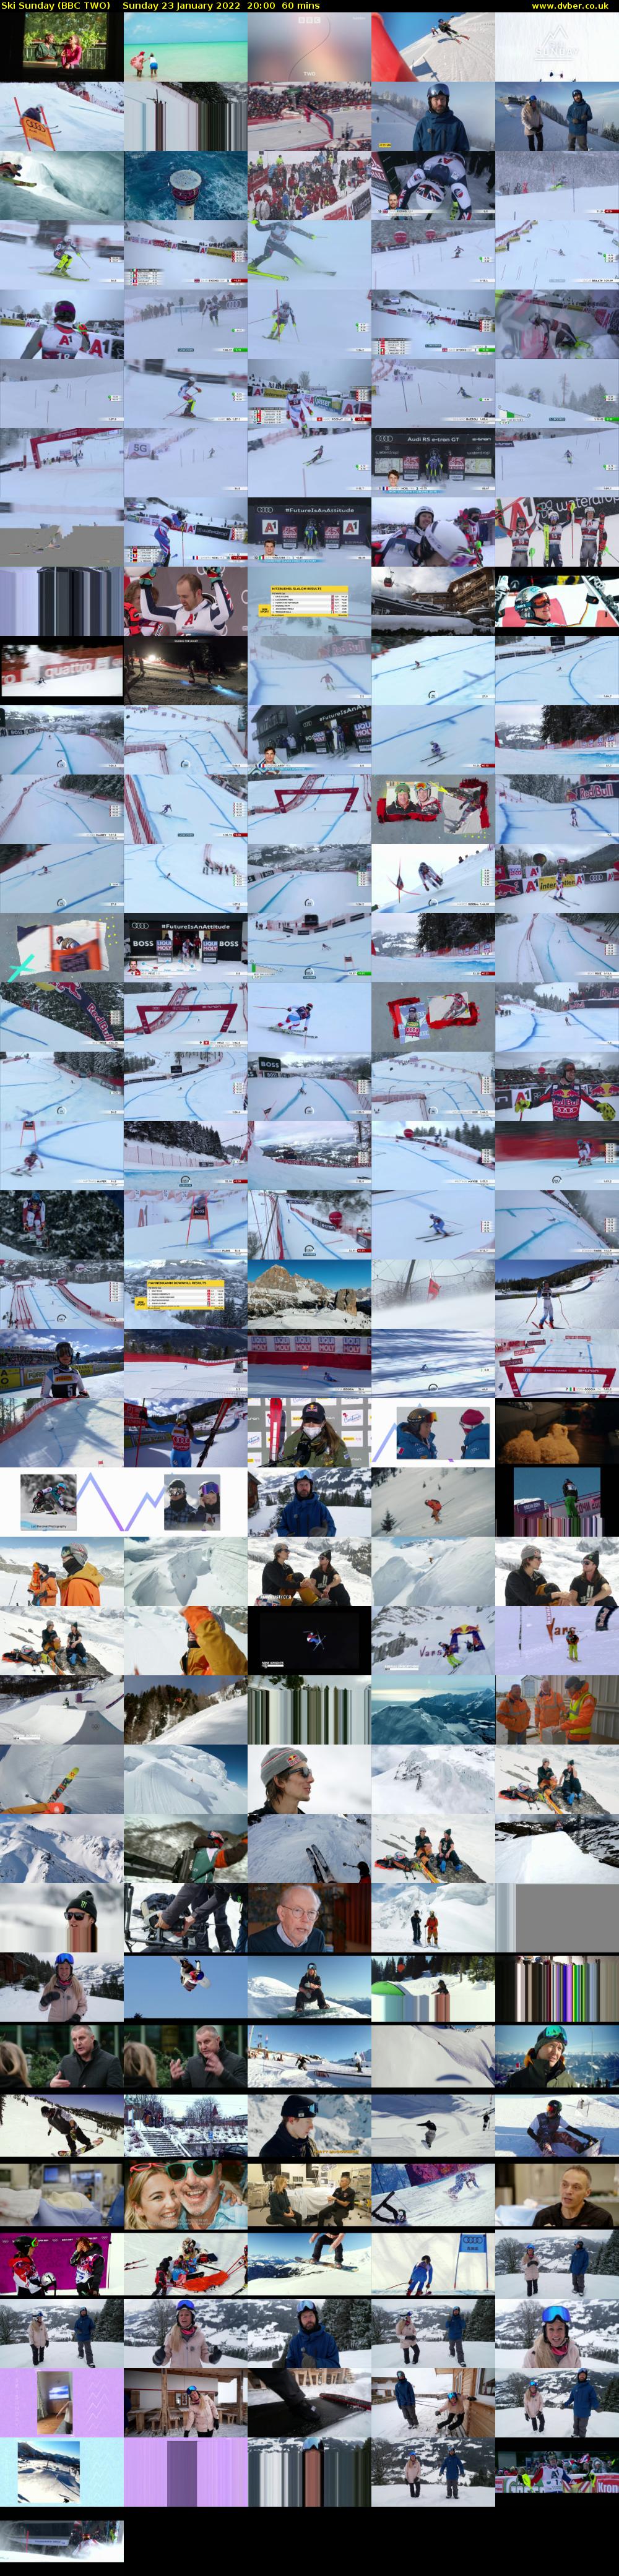 Ski Sunday (BBC TWO) Sunday 23 January 2022 20:00 - 21:00